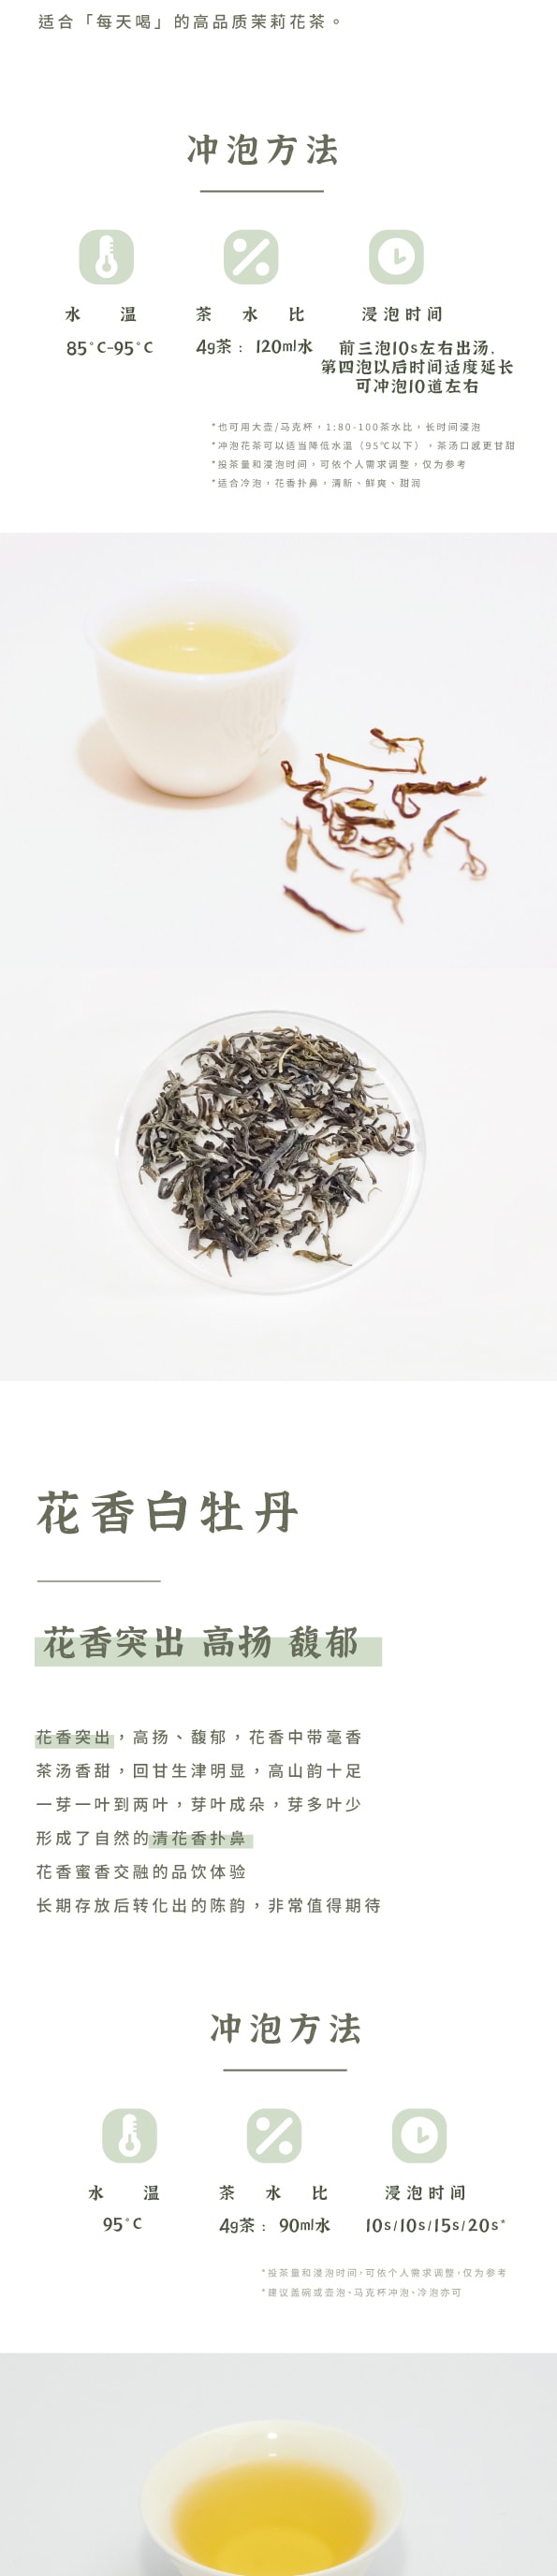 美國 趙趙的茶 ZhaoTea 新中式茶禮盒 · 千里江山 · 中國名畫 送禮/擺設/存茶/品飲 花香小种红茶48g(6gx8)